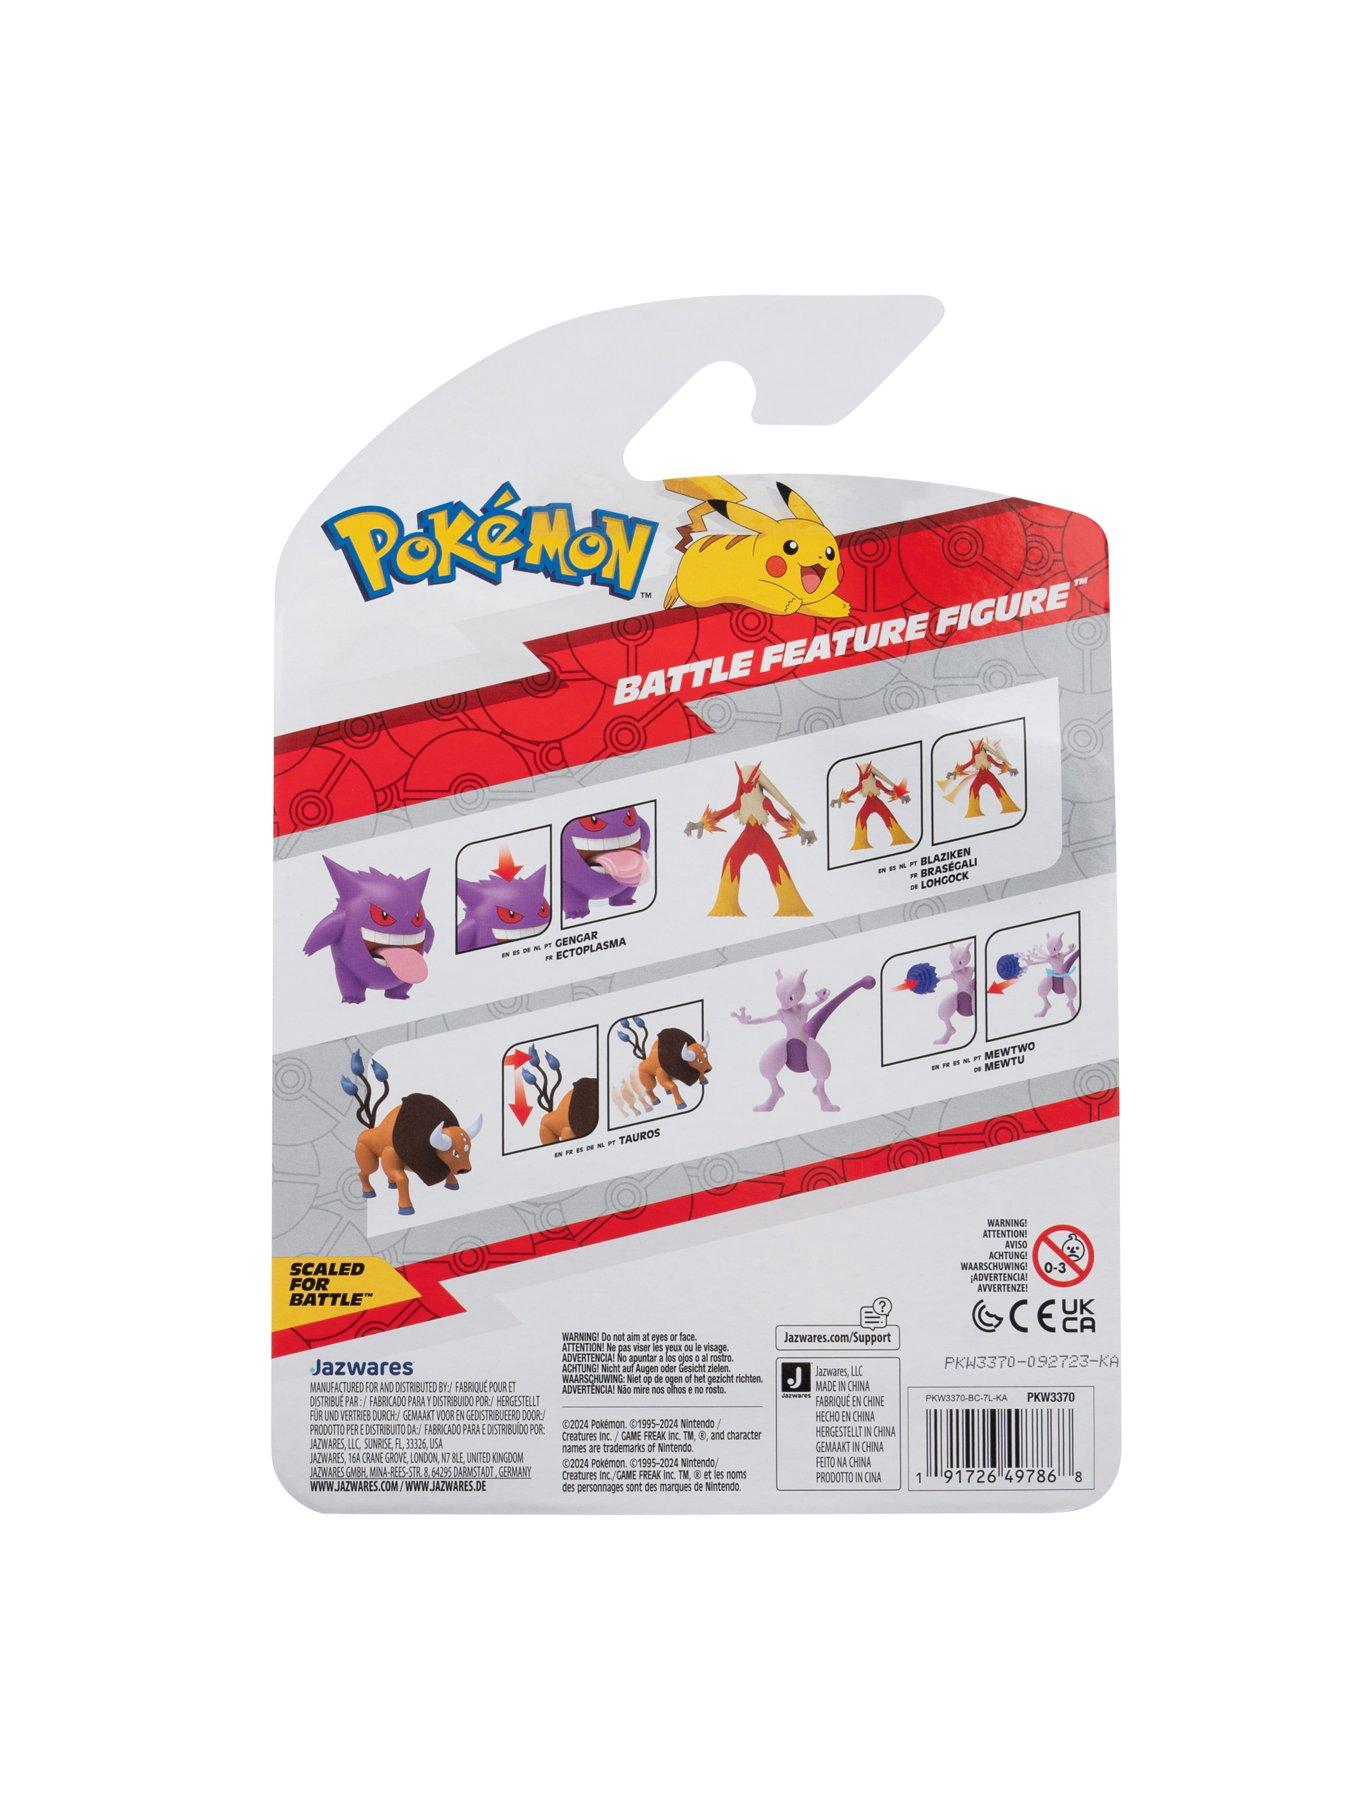 Pokemon Pokémon Mewtwo Battle Feature Figure - 4.5-Inch Mewtwo Battle ...